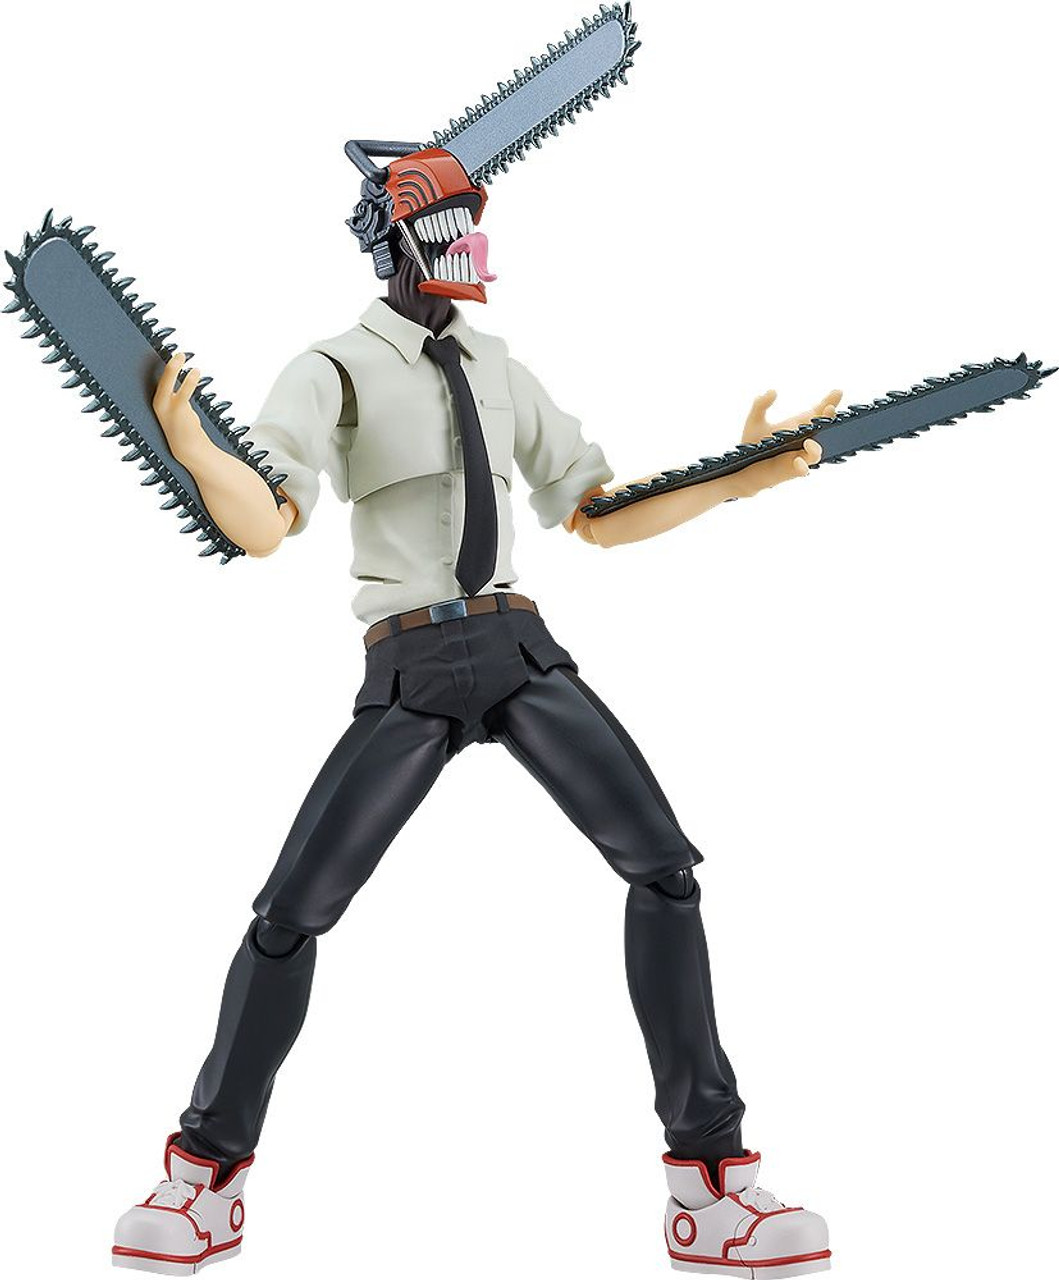 Denji: Tudo sobre o personagem principal de Chainsaw Man